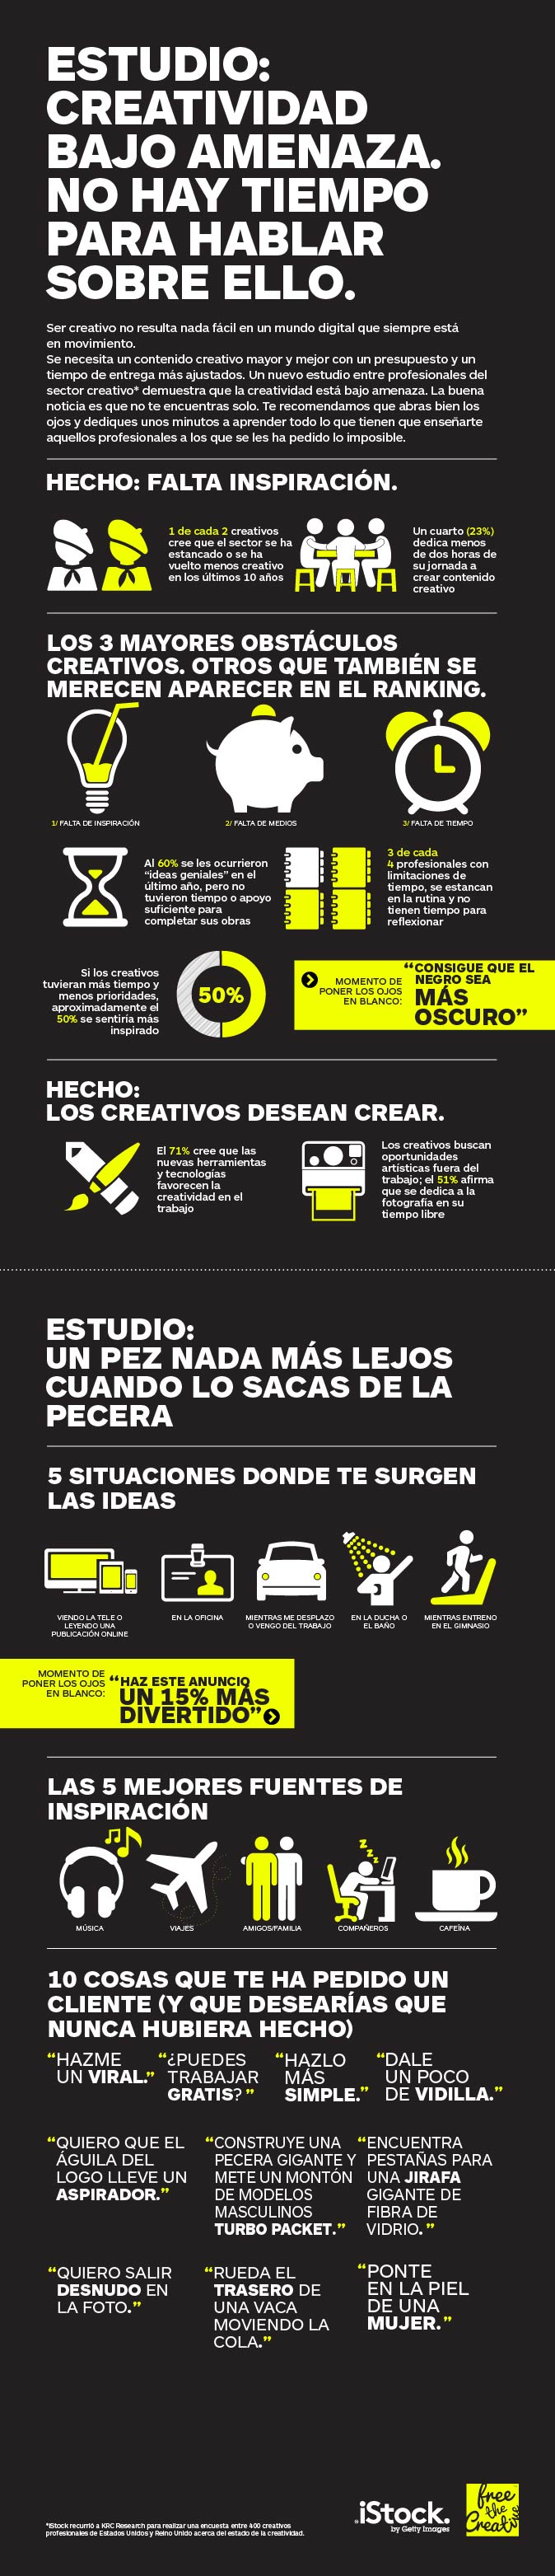 EBDLN-Creativitat-Infografia-2